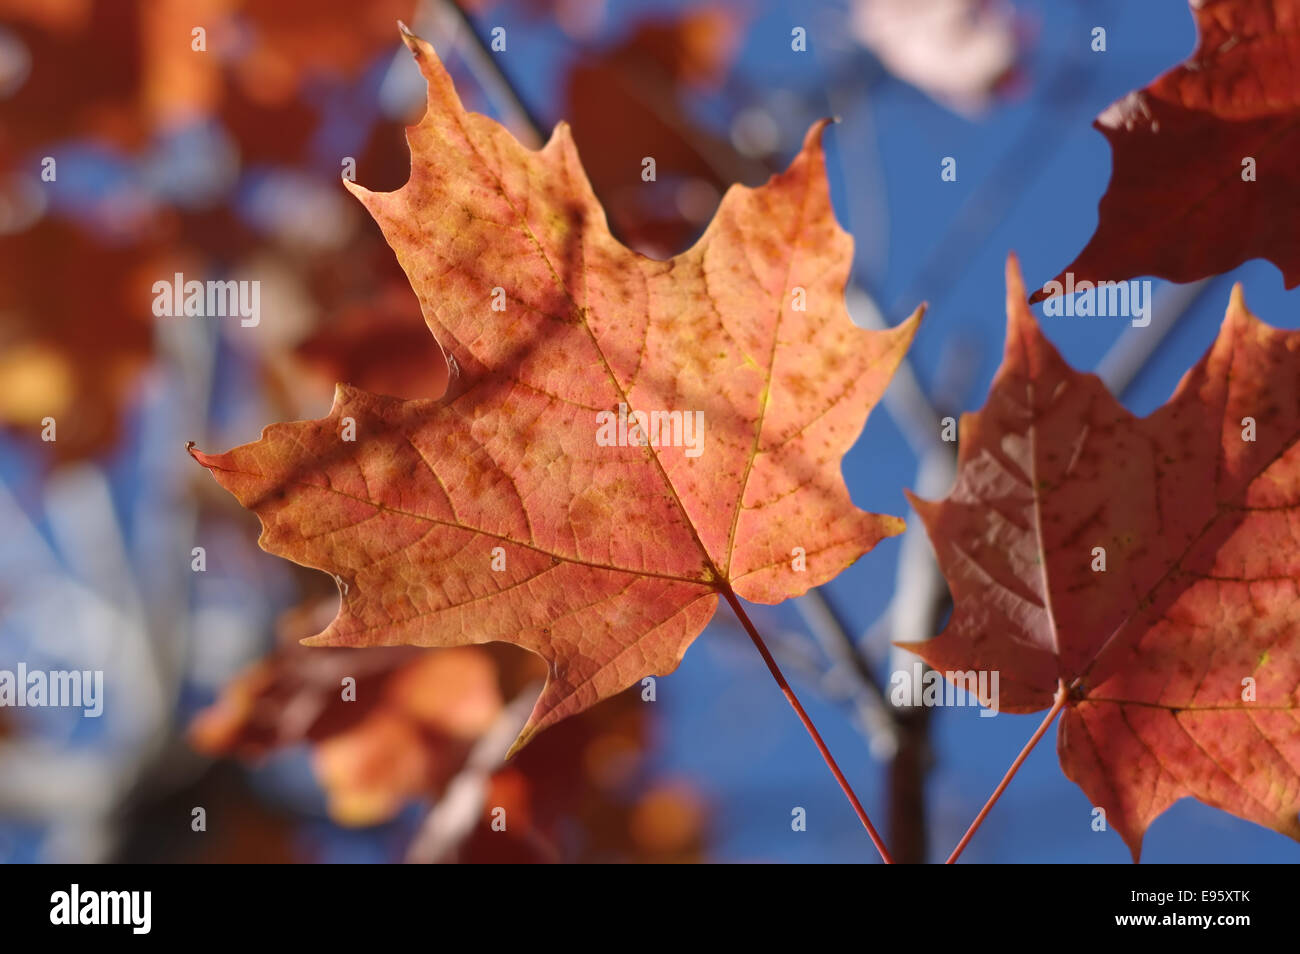 Autumn-leaves--maple-E95XTK.jpg